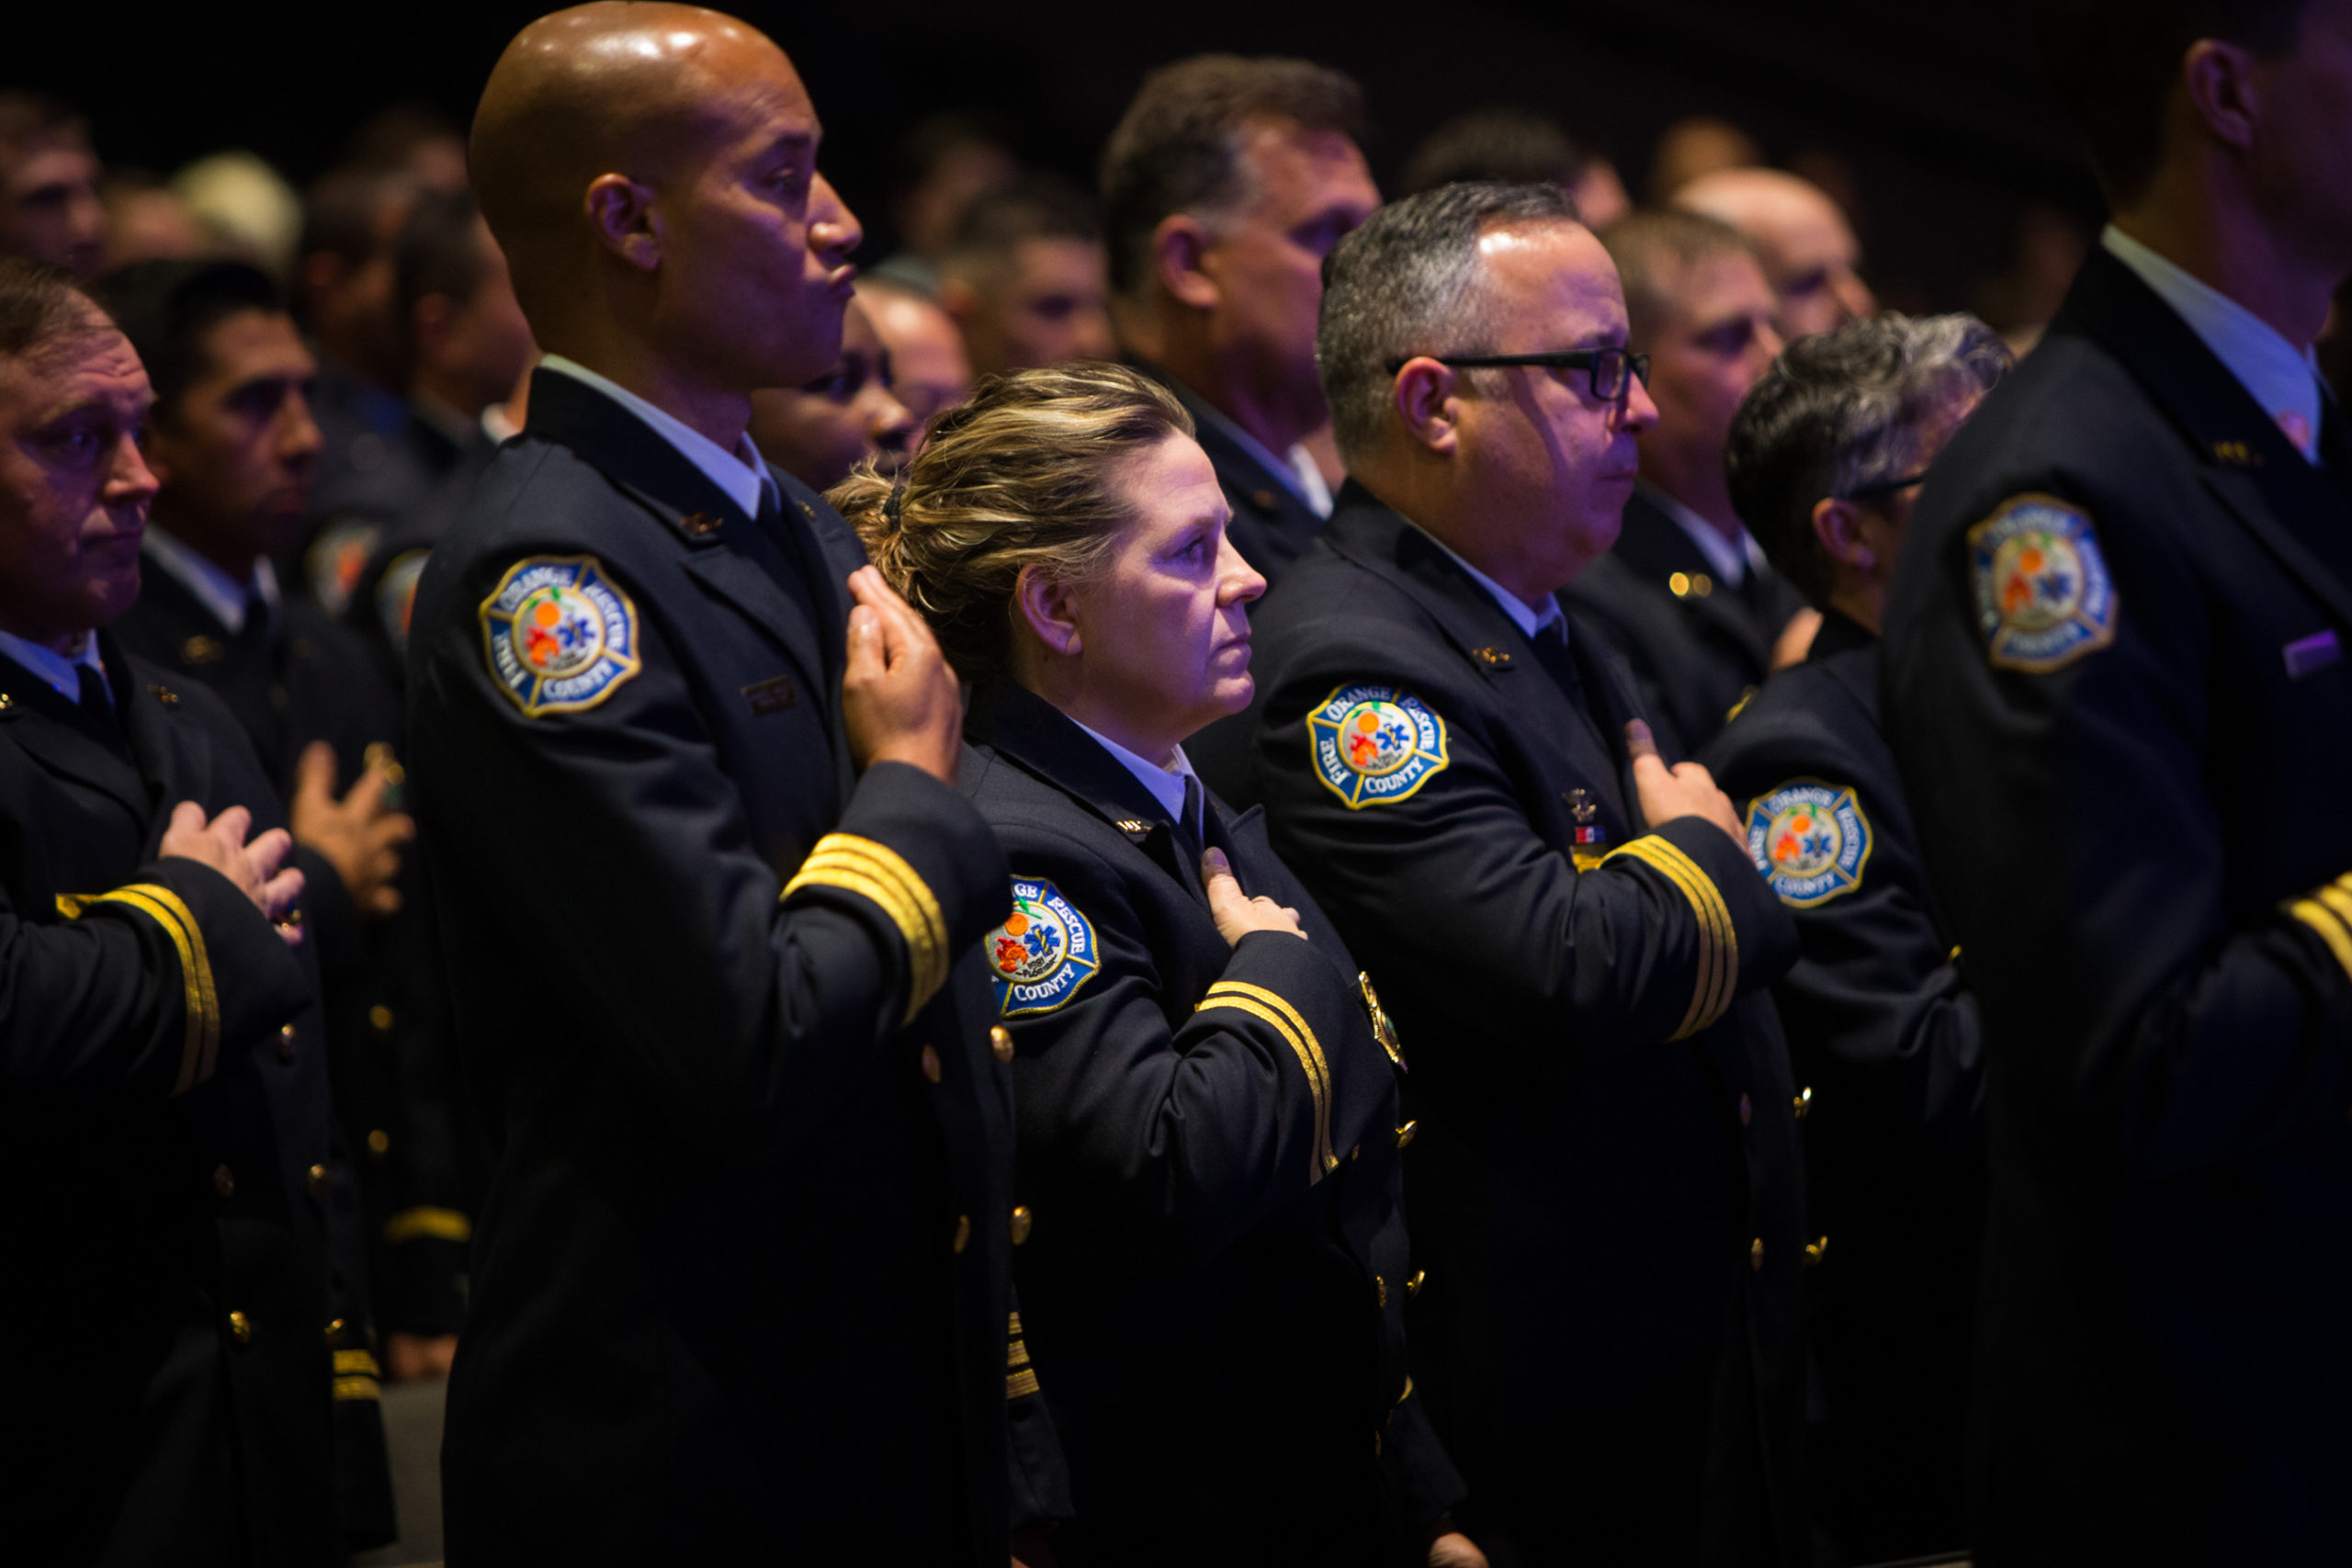 El Cuerpo de Bomberos del Condado de Orange celebró una ceremonia de promoción para oficiales, bomberos y administradores el 18 de noviembre de 2021, la primera ceremonia que se celebra desde el inicio de la pandemia del COVID-19.